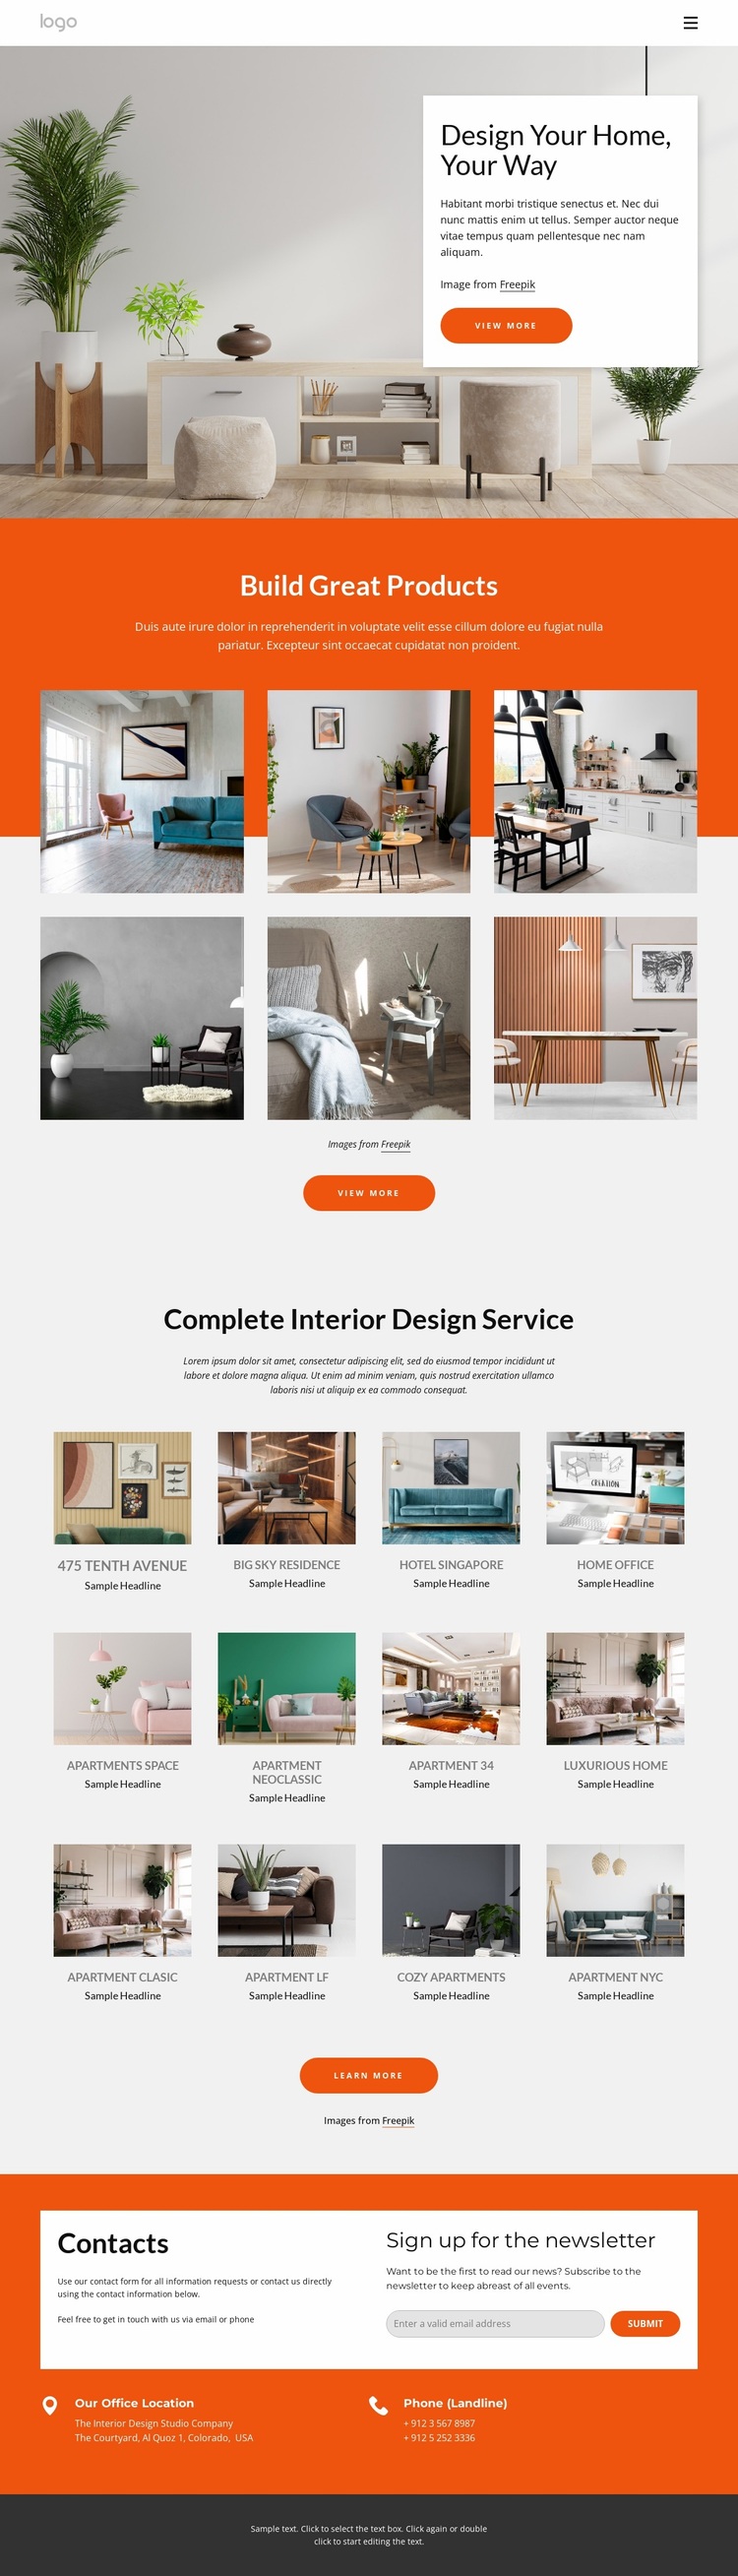 Interior design portfolio Website Design